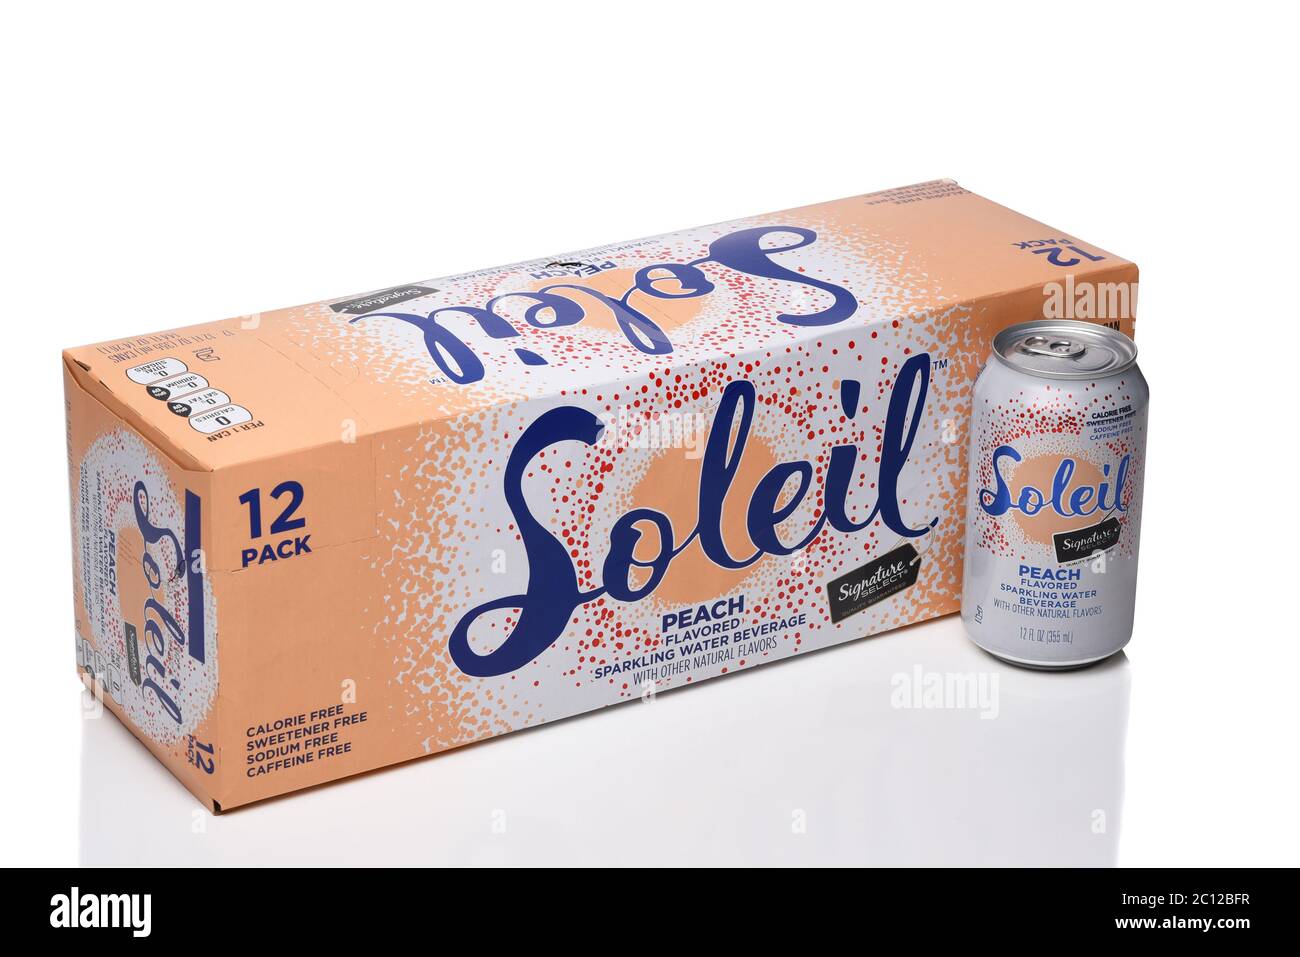 IRVINE, KALIFORNIEN - 8. JUNI 2020: Ein 12 Pack Soleil Peach aromatisiertes Sparkling Water. Stockfoto